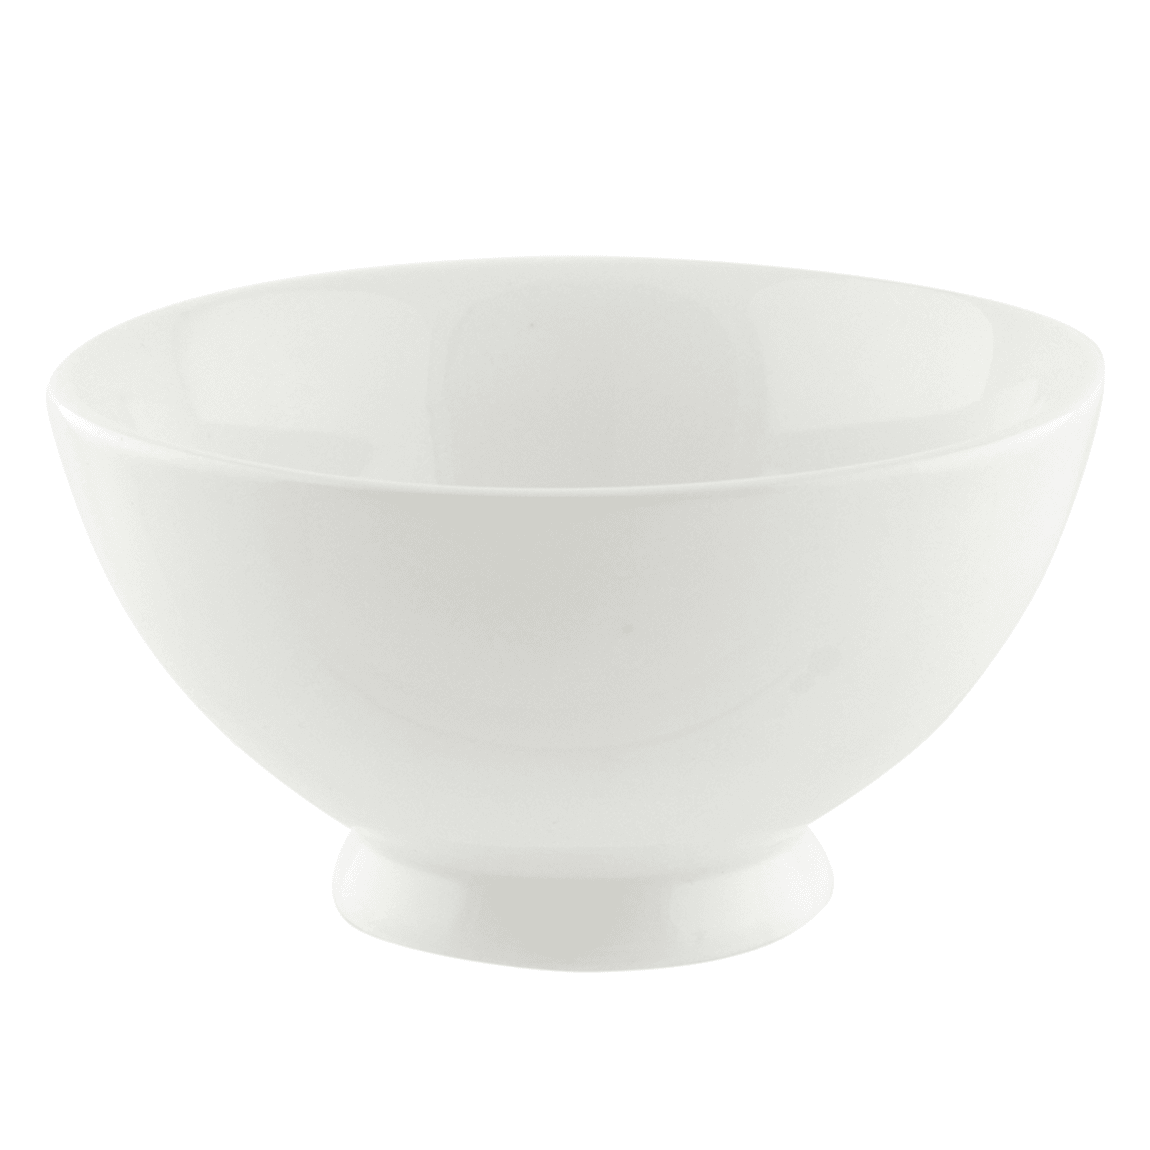 10 Strawberry Street WTR-4FTDBWL 6 oz Rice Bowl - Porcelain, White